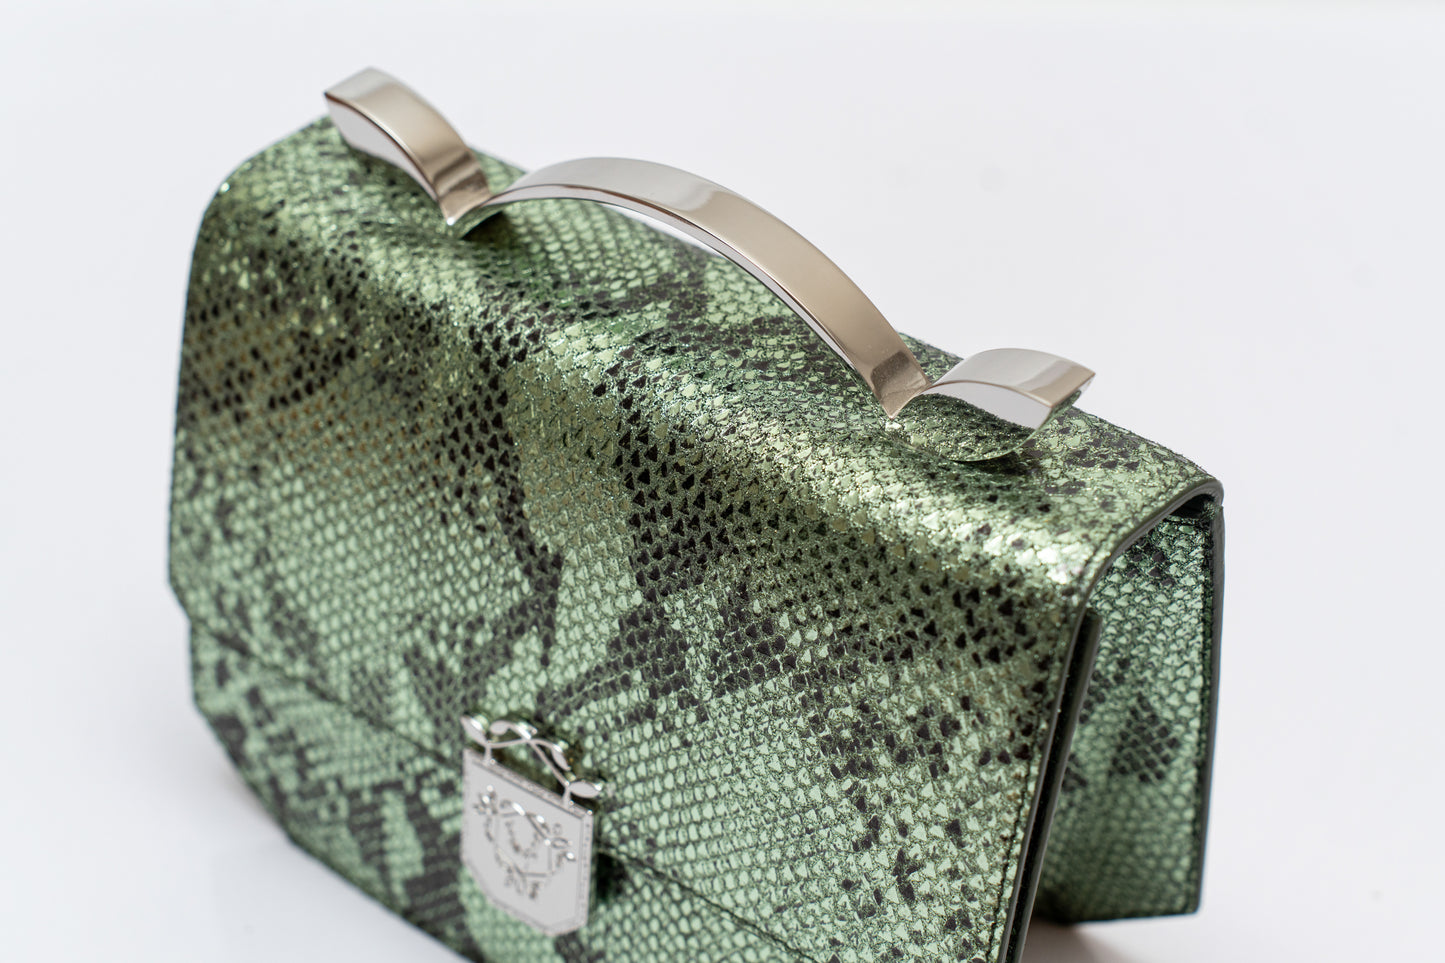 Shimmery Snake pattern shoulder bag - Genuine Italian Leather